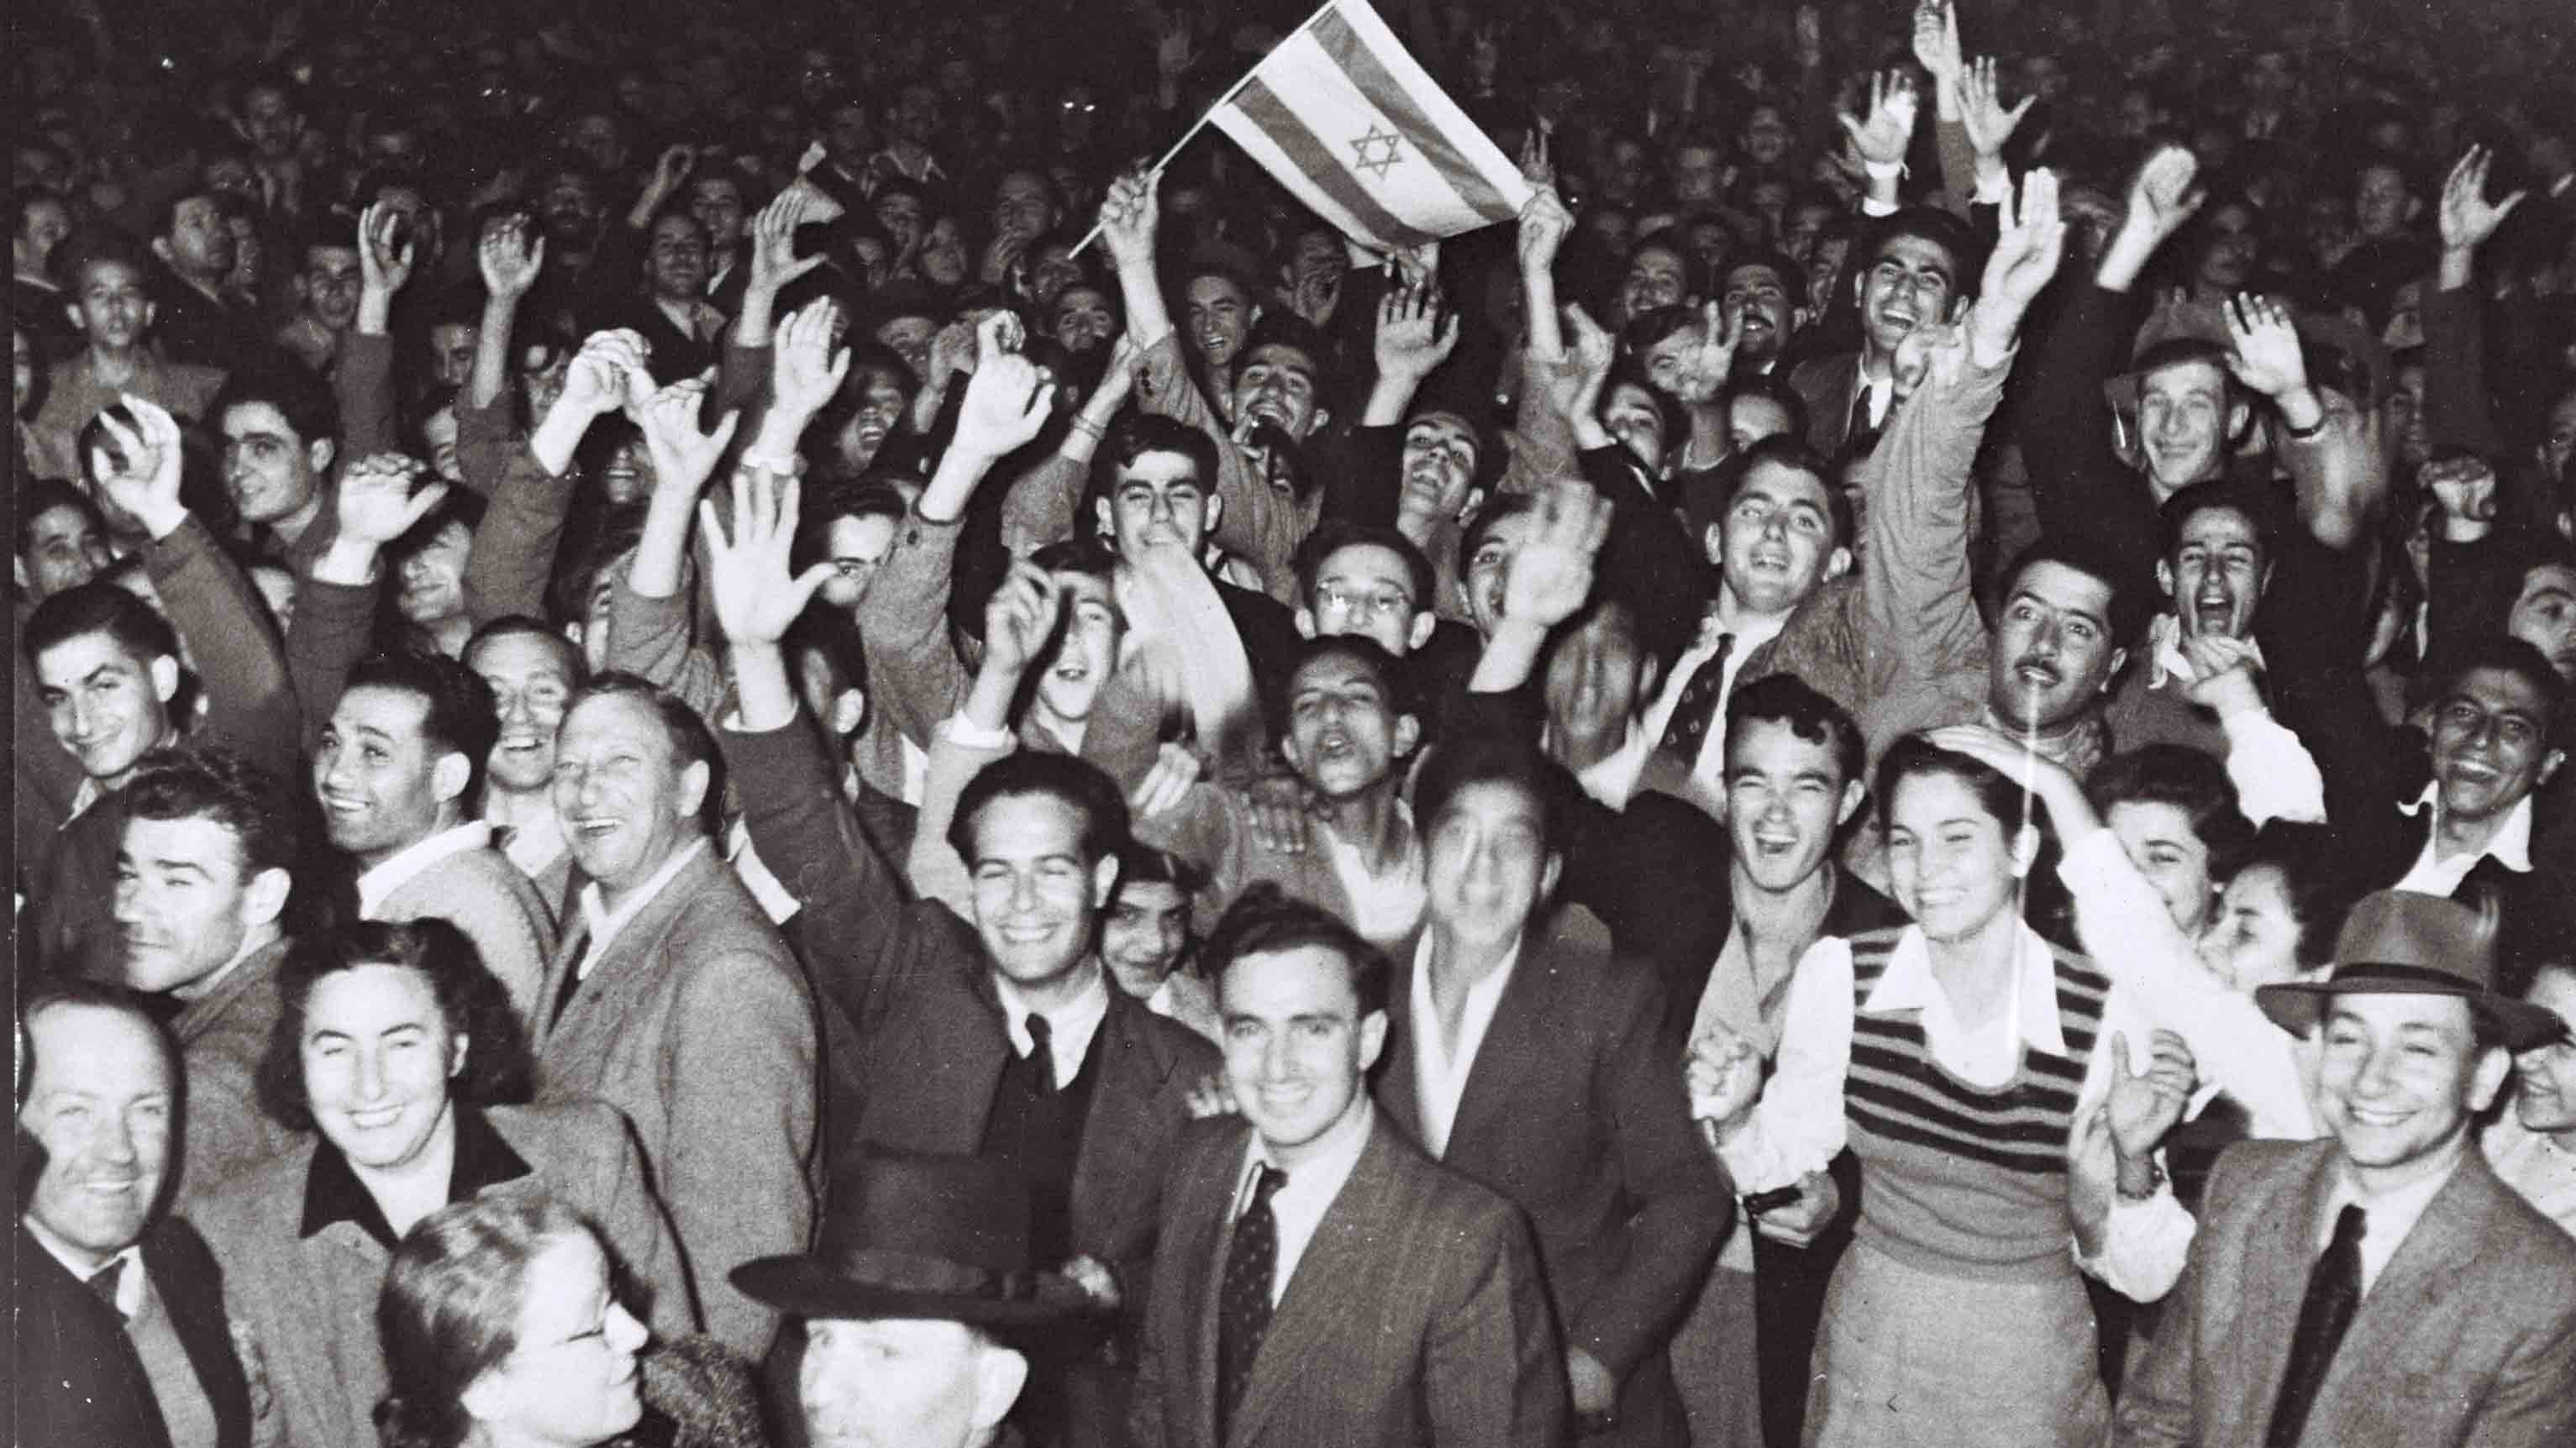 שמחת חוגגים ברחובות העיר תל אביב ליד קולנוע מוגרבי, כשהוכרז באו&quot;ם על כינונה של מדינת היהודים בארץ ישראל, כ&quot;ט בנובמבר 1947. (PINN HANS / לע&quot;מ)